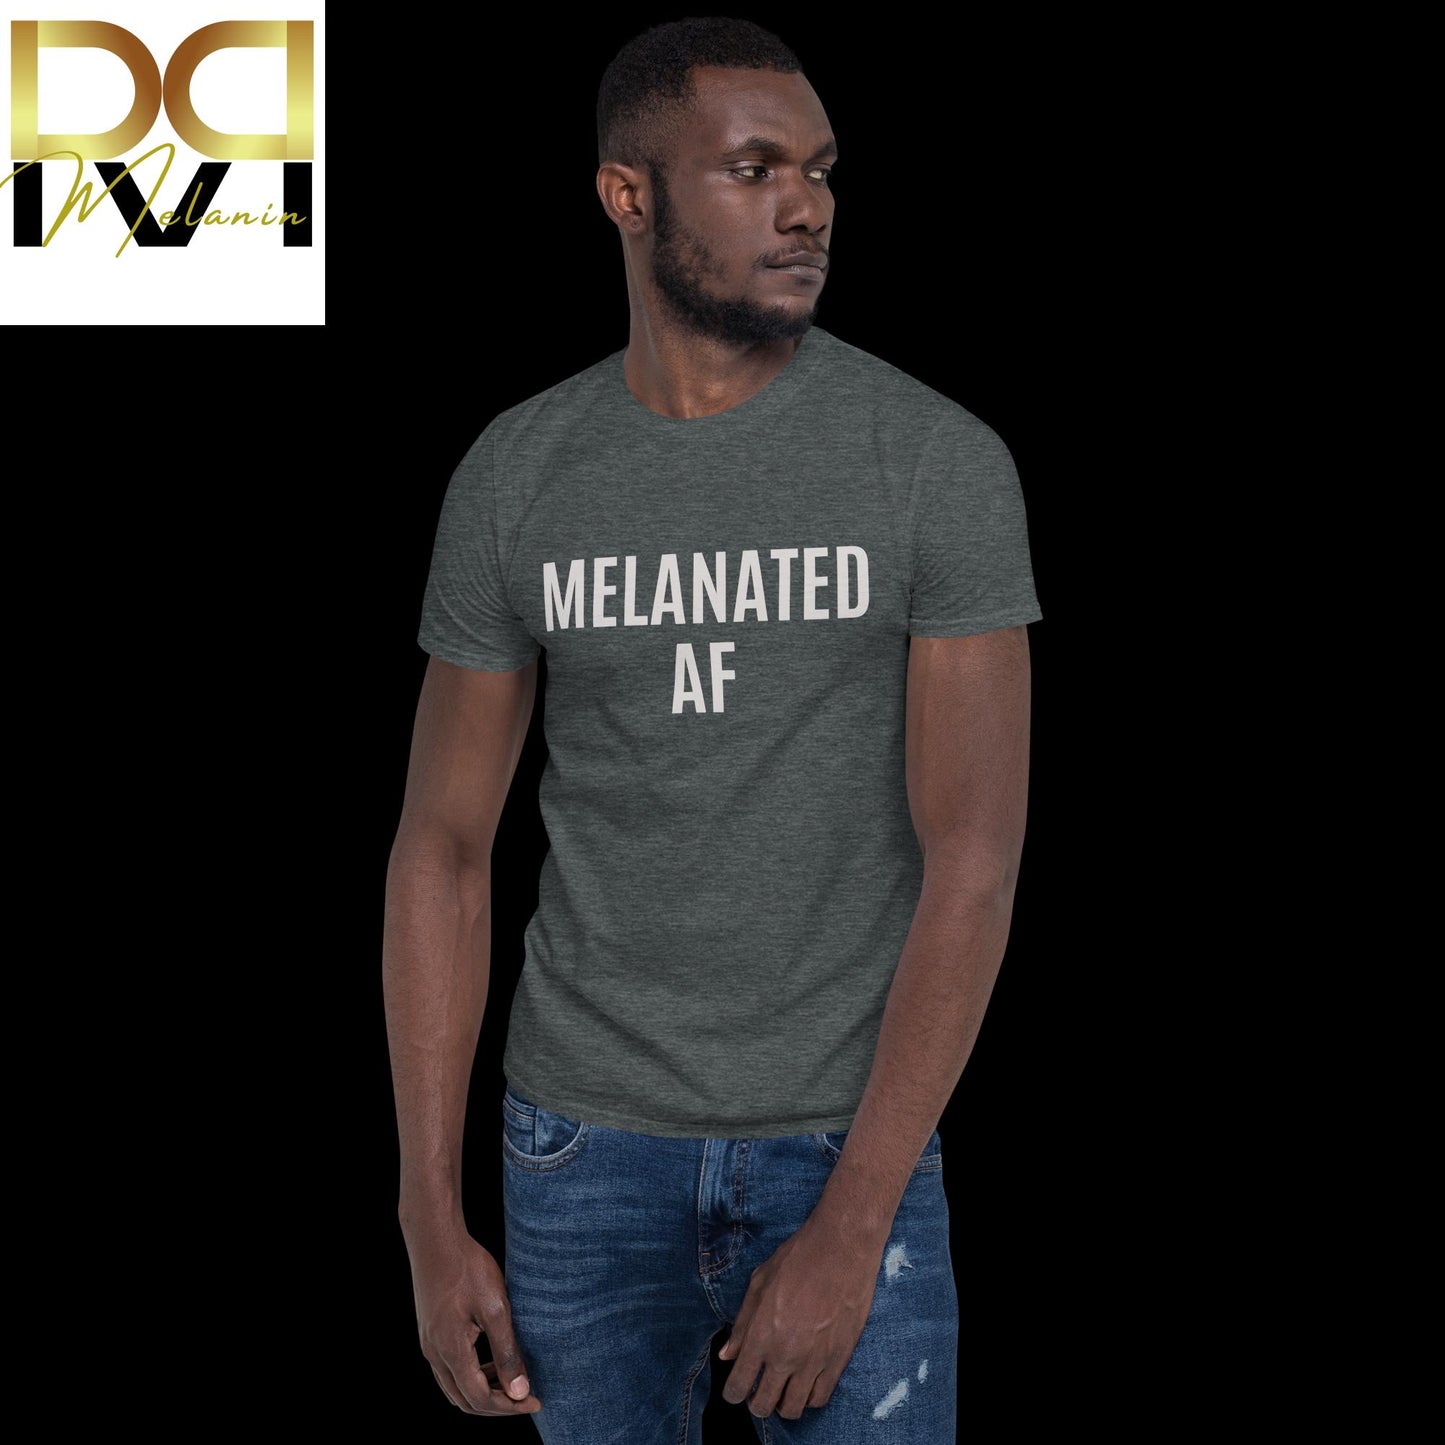 "Melanated AF" T-Shirt - Boldly Celebrate Your Melanin